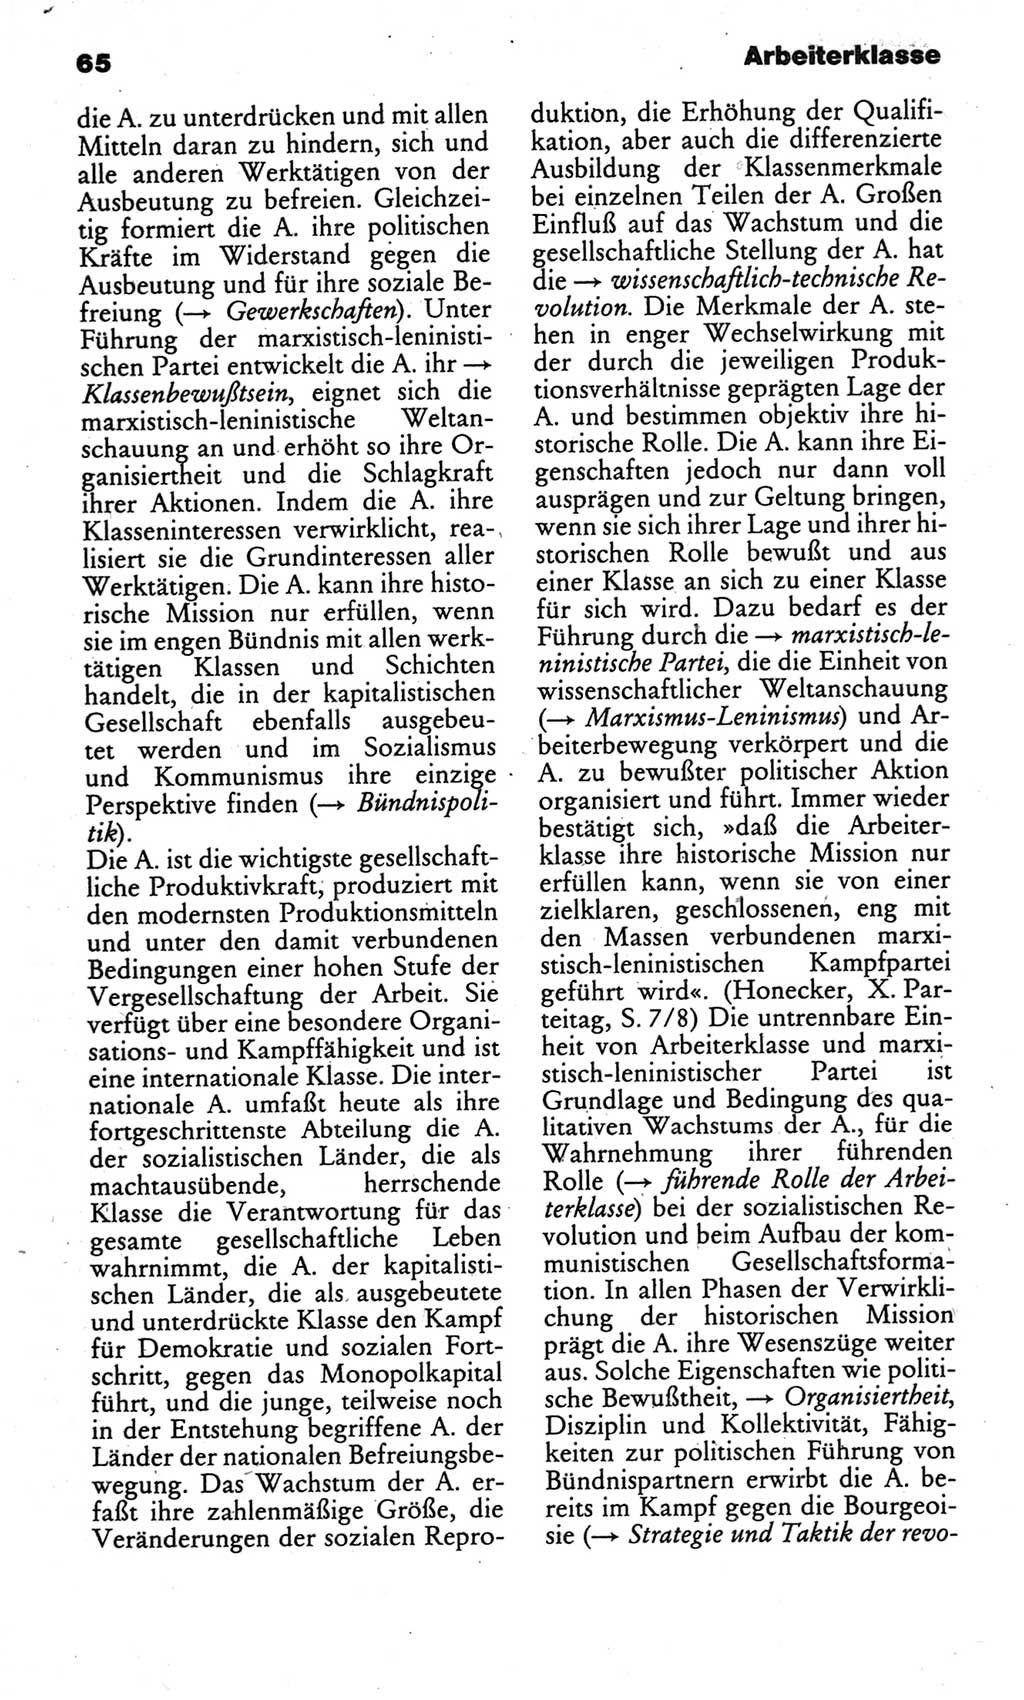 Kleines politisches Wörterbuch [Deutsche Demokratische Republik (DDR)] 1986, Seite 65 (Kl. pol. Wb. DDR 1986, S. 65)